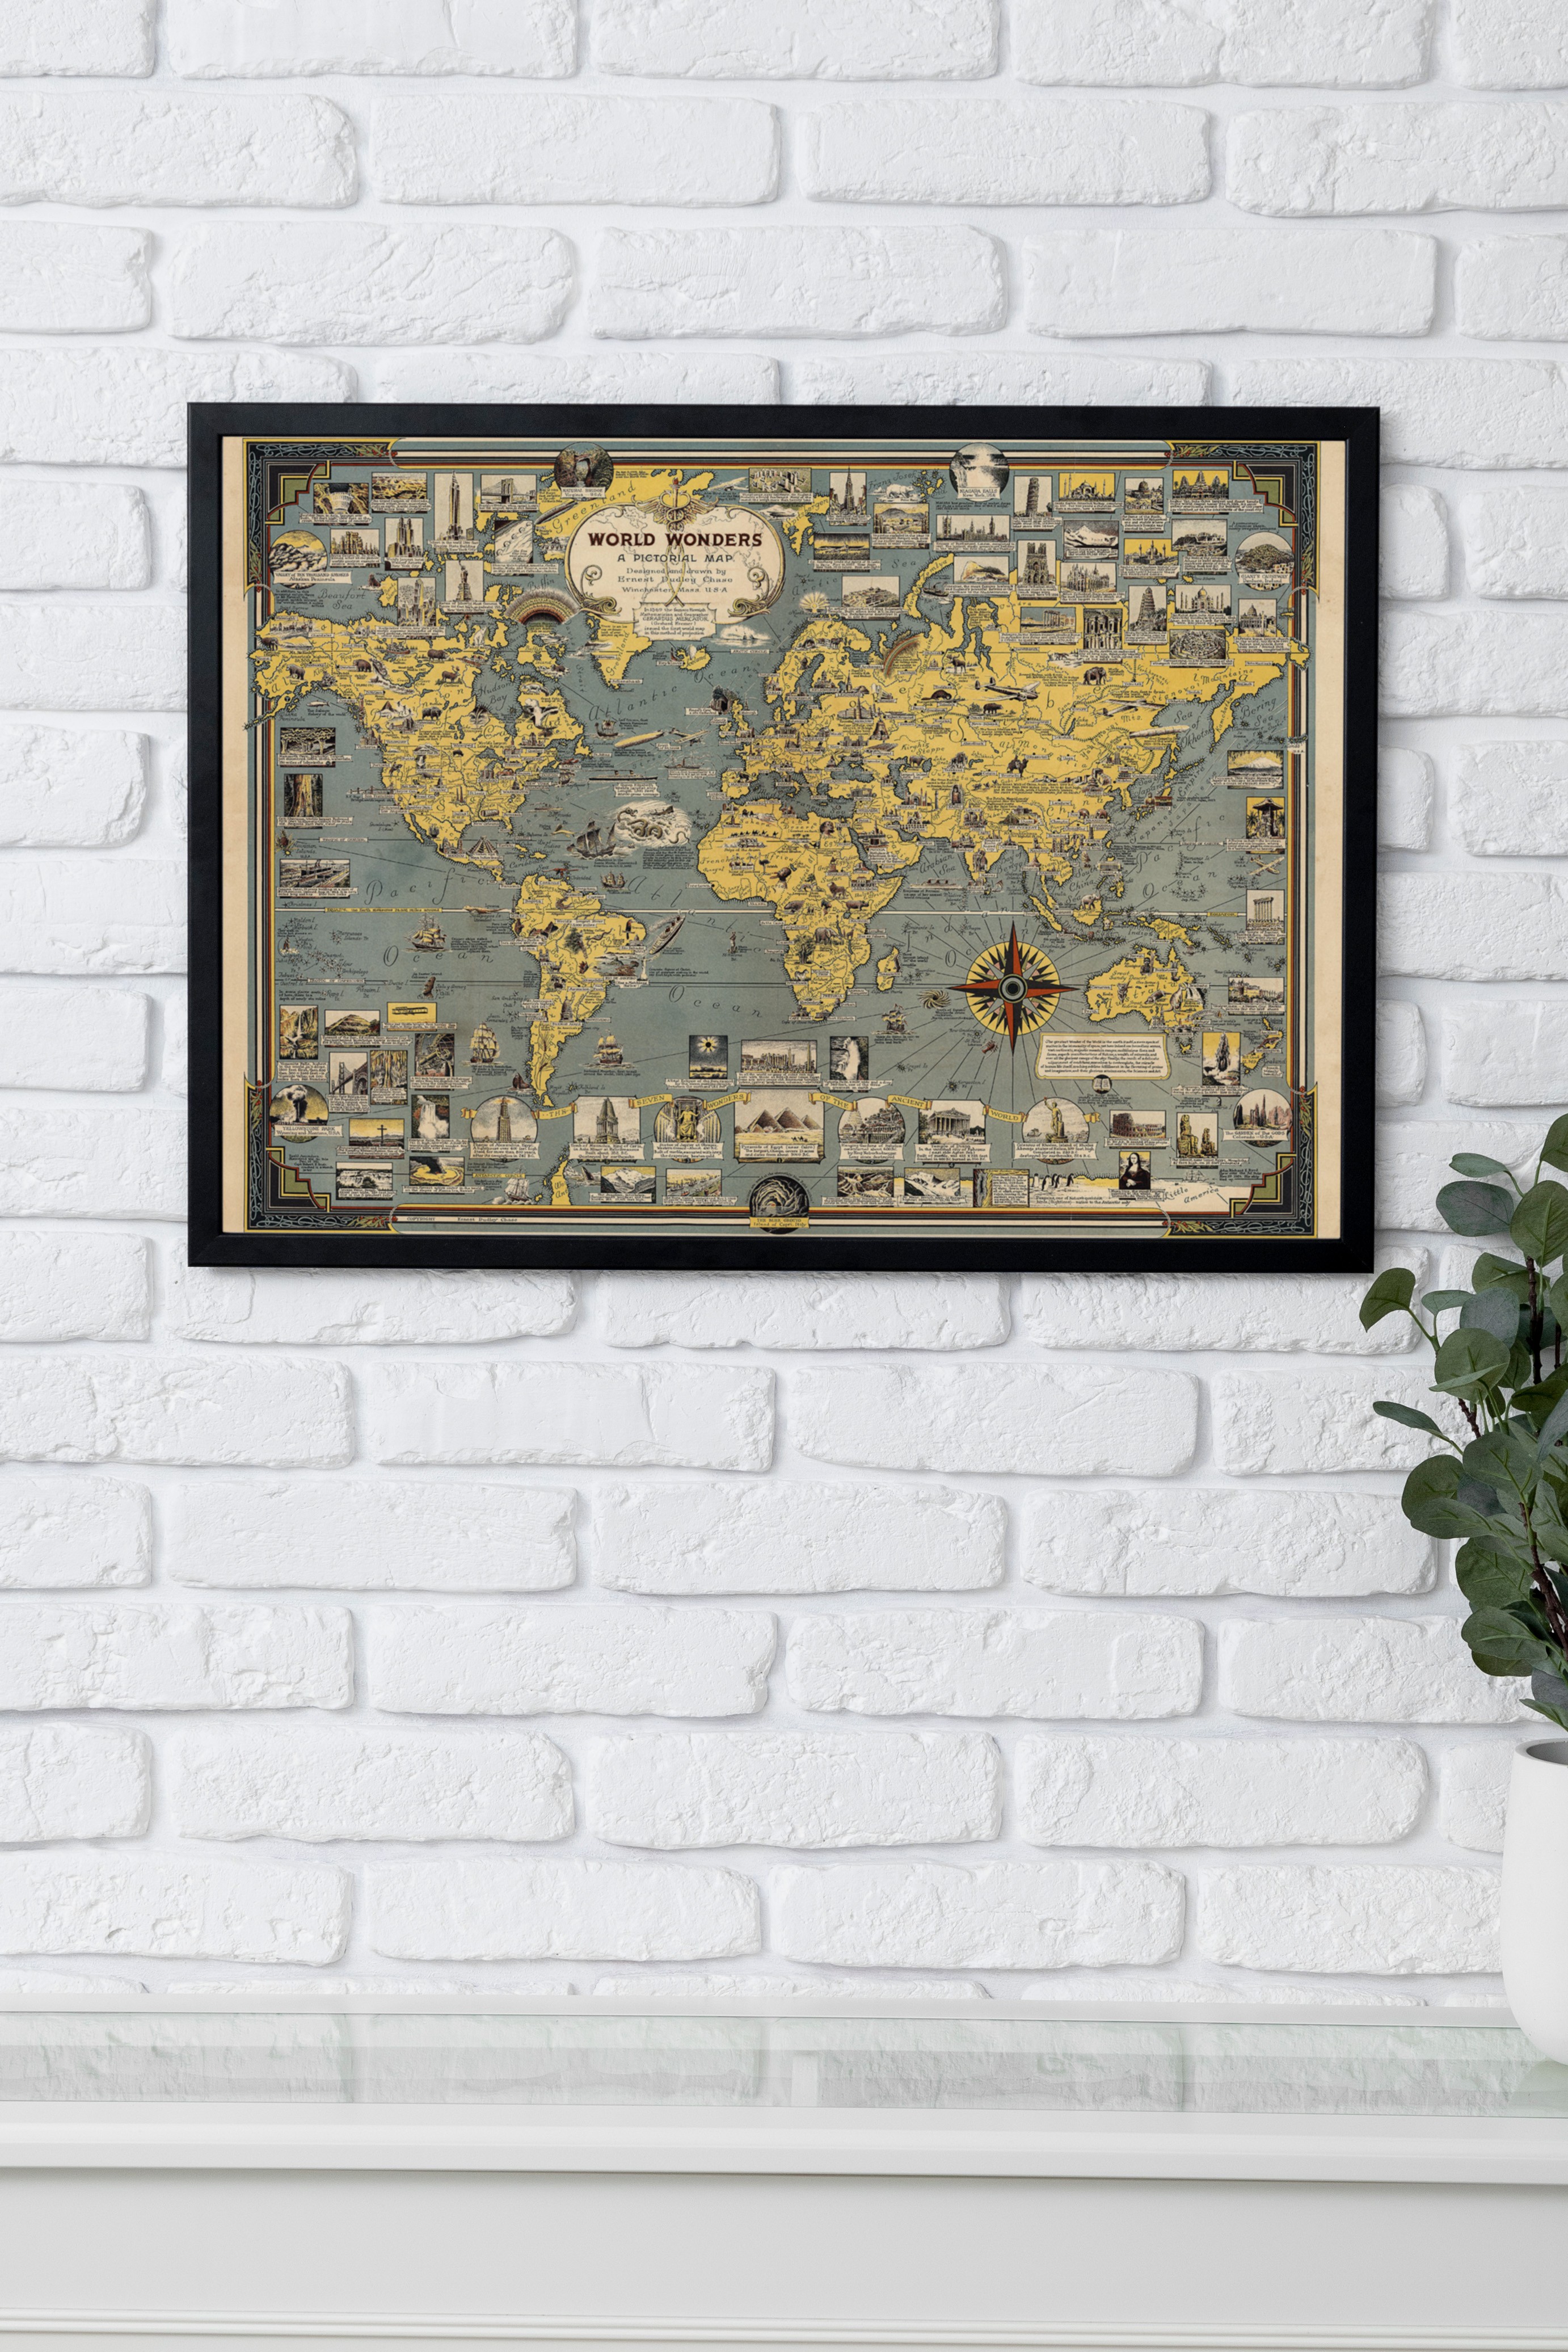 Dünya Harikaları Harita Poster (World Wonders Map) - Ernest Dudley